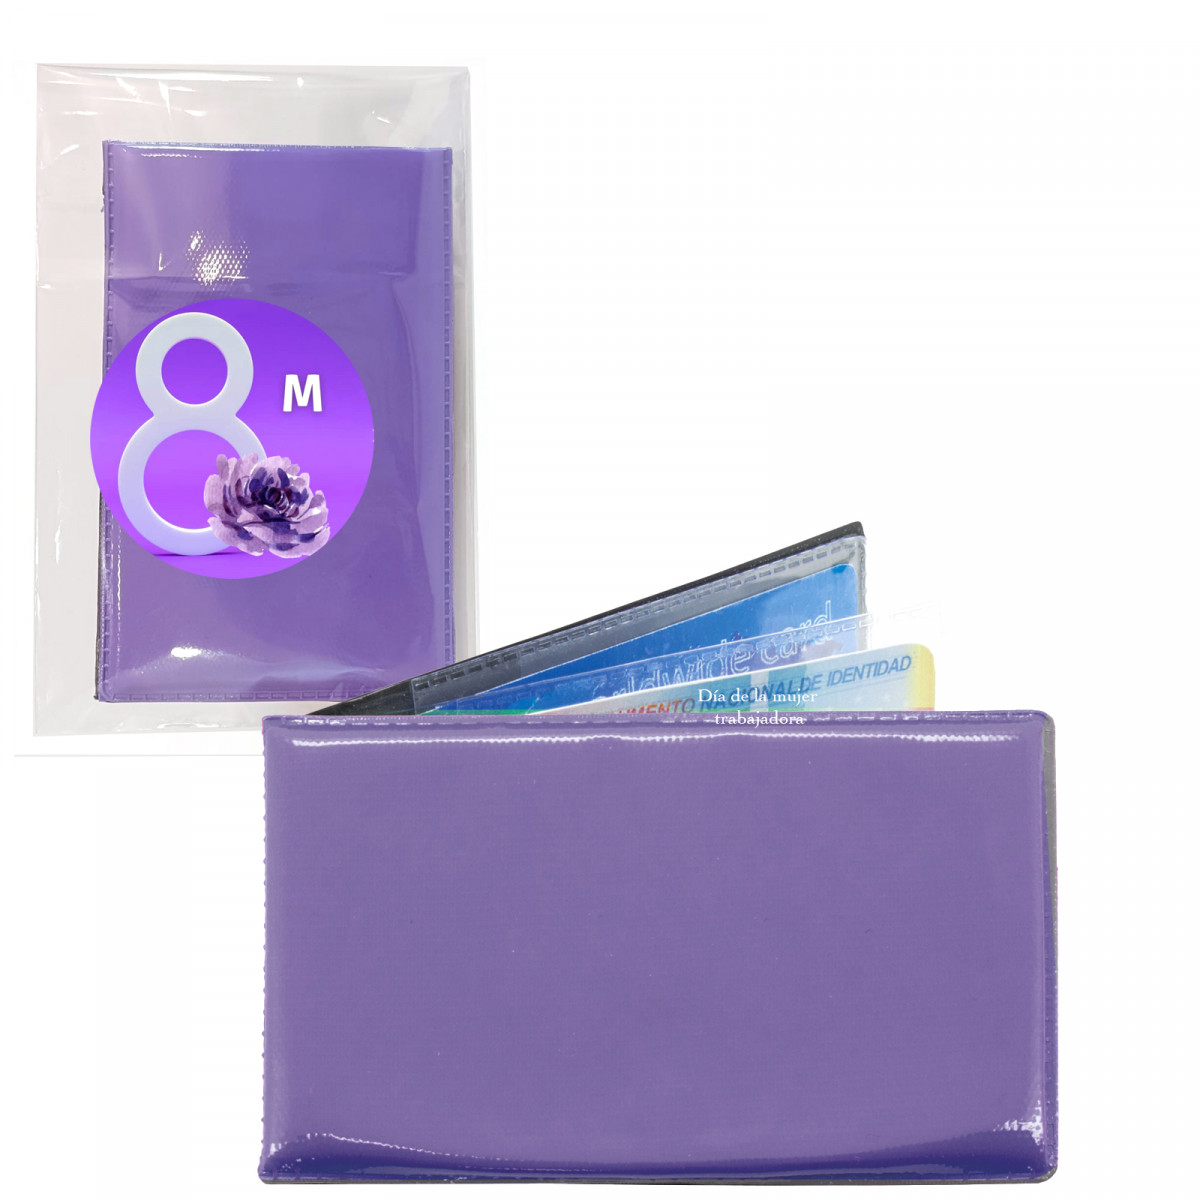 Porte cartes pour femme de couleur lilas présenté dans un sachet transparent avec autocollant image